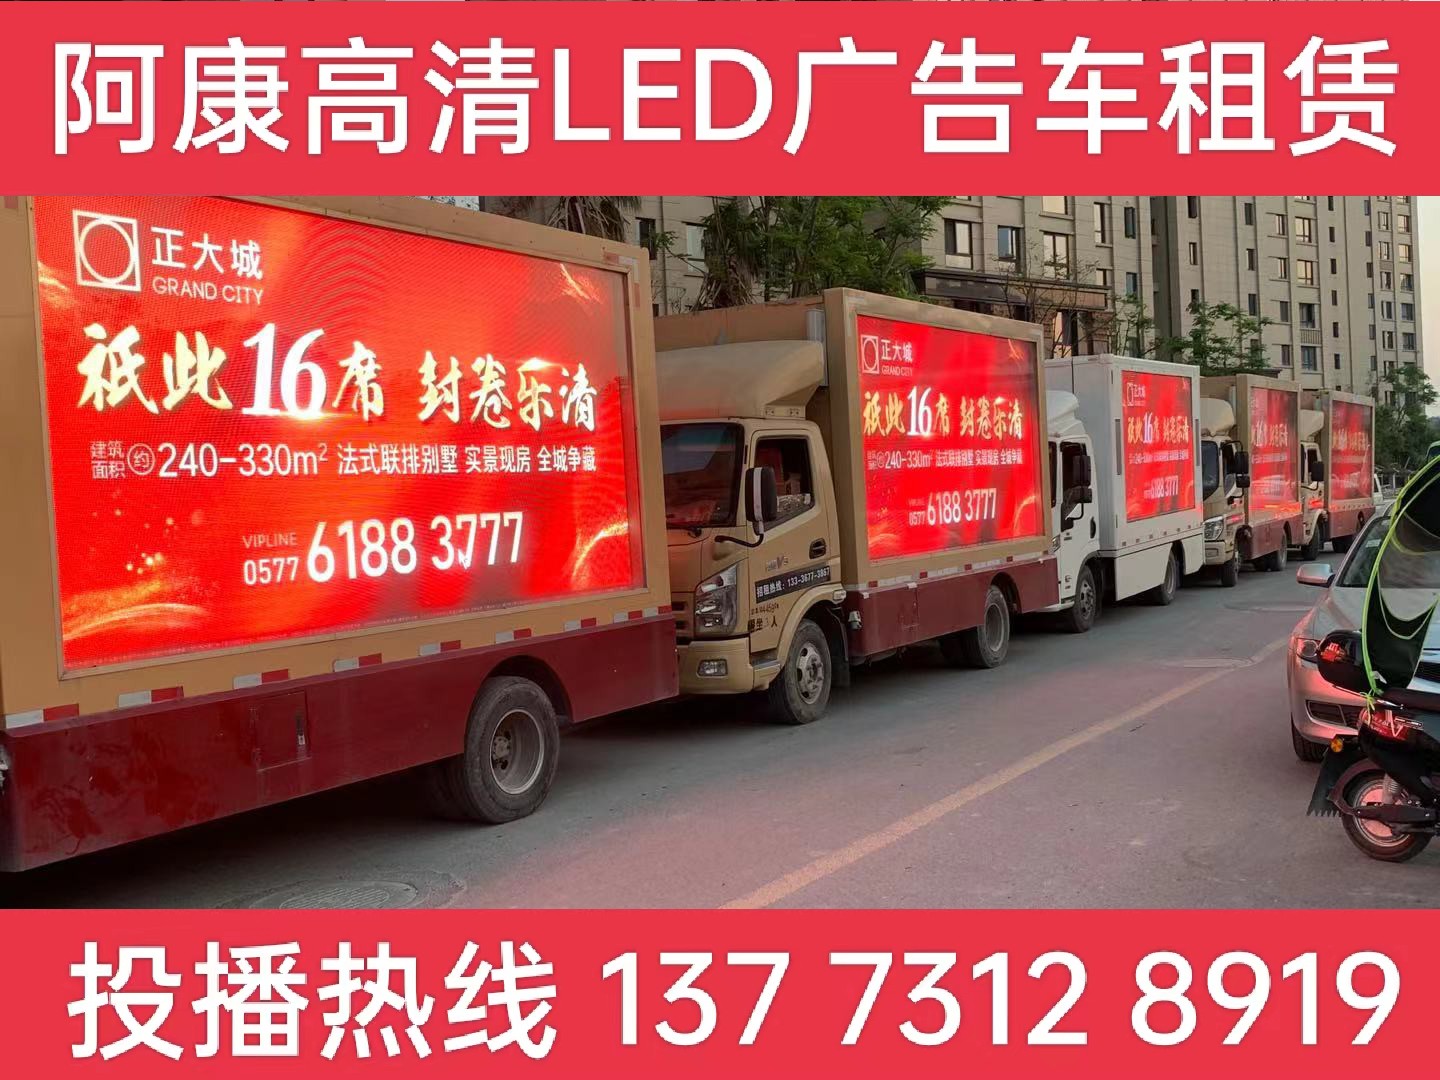 栖霞区LED广告车出租